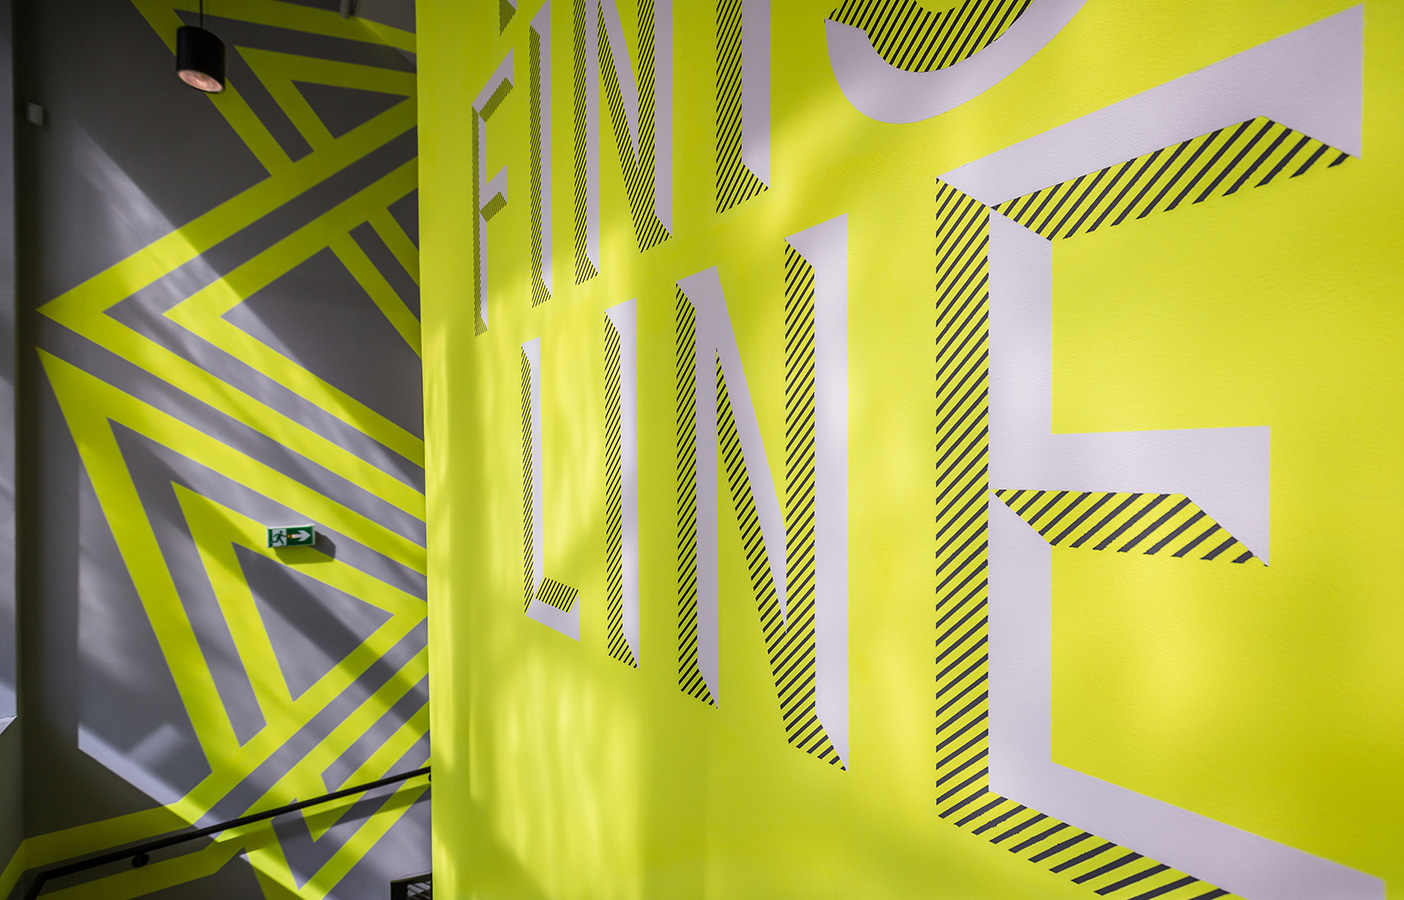 Aldworth James & Bond | Nike Store Les Halles, Paris - staircase decoration detail